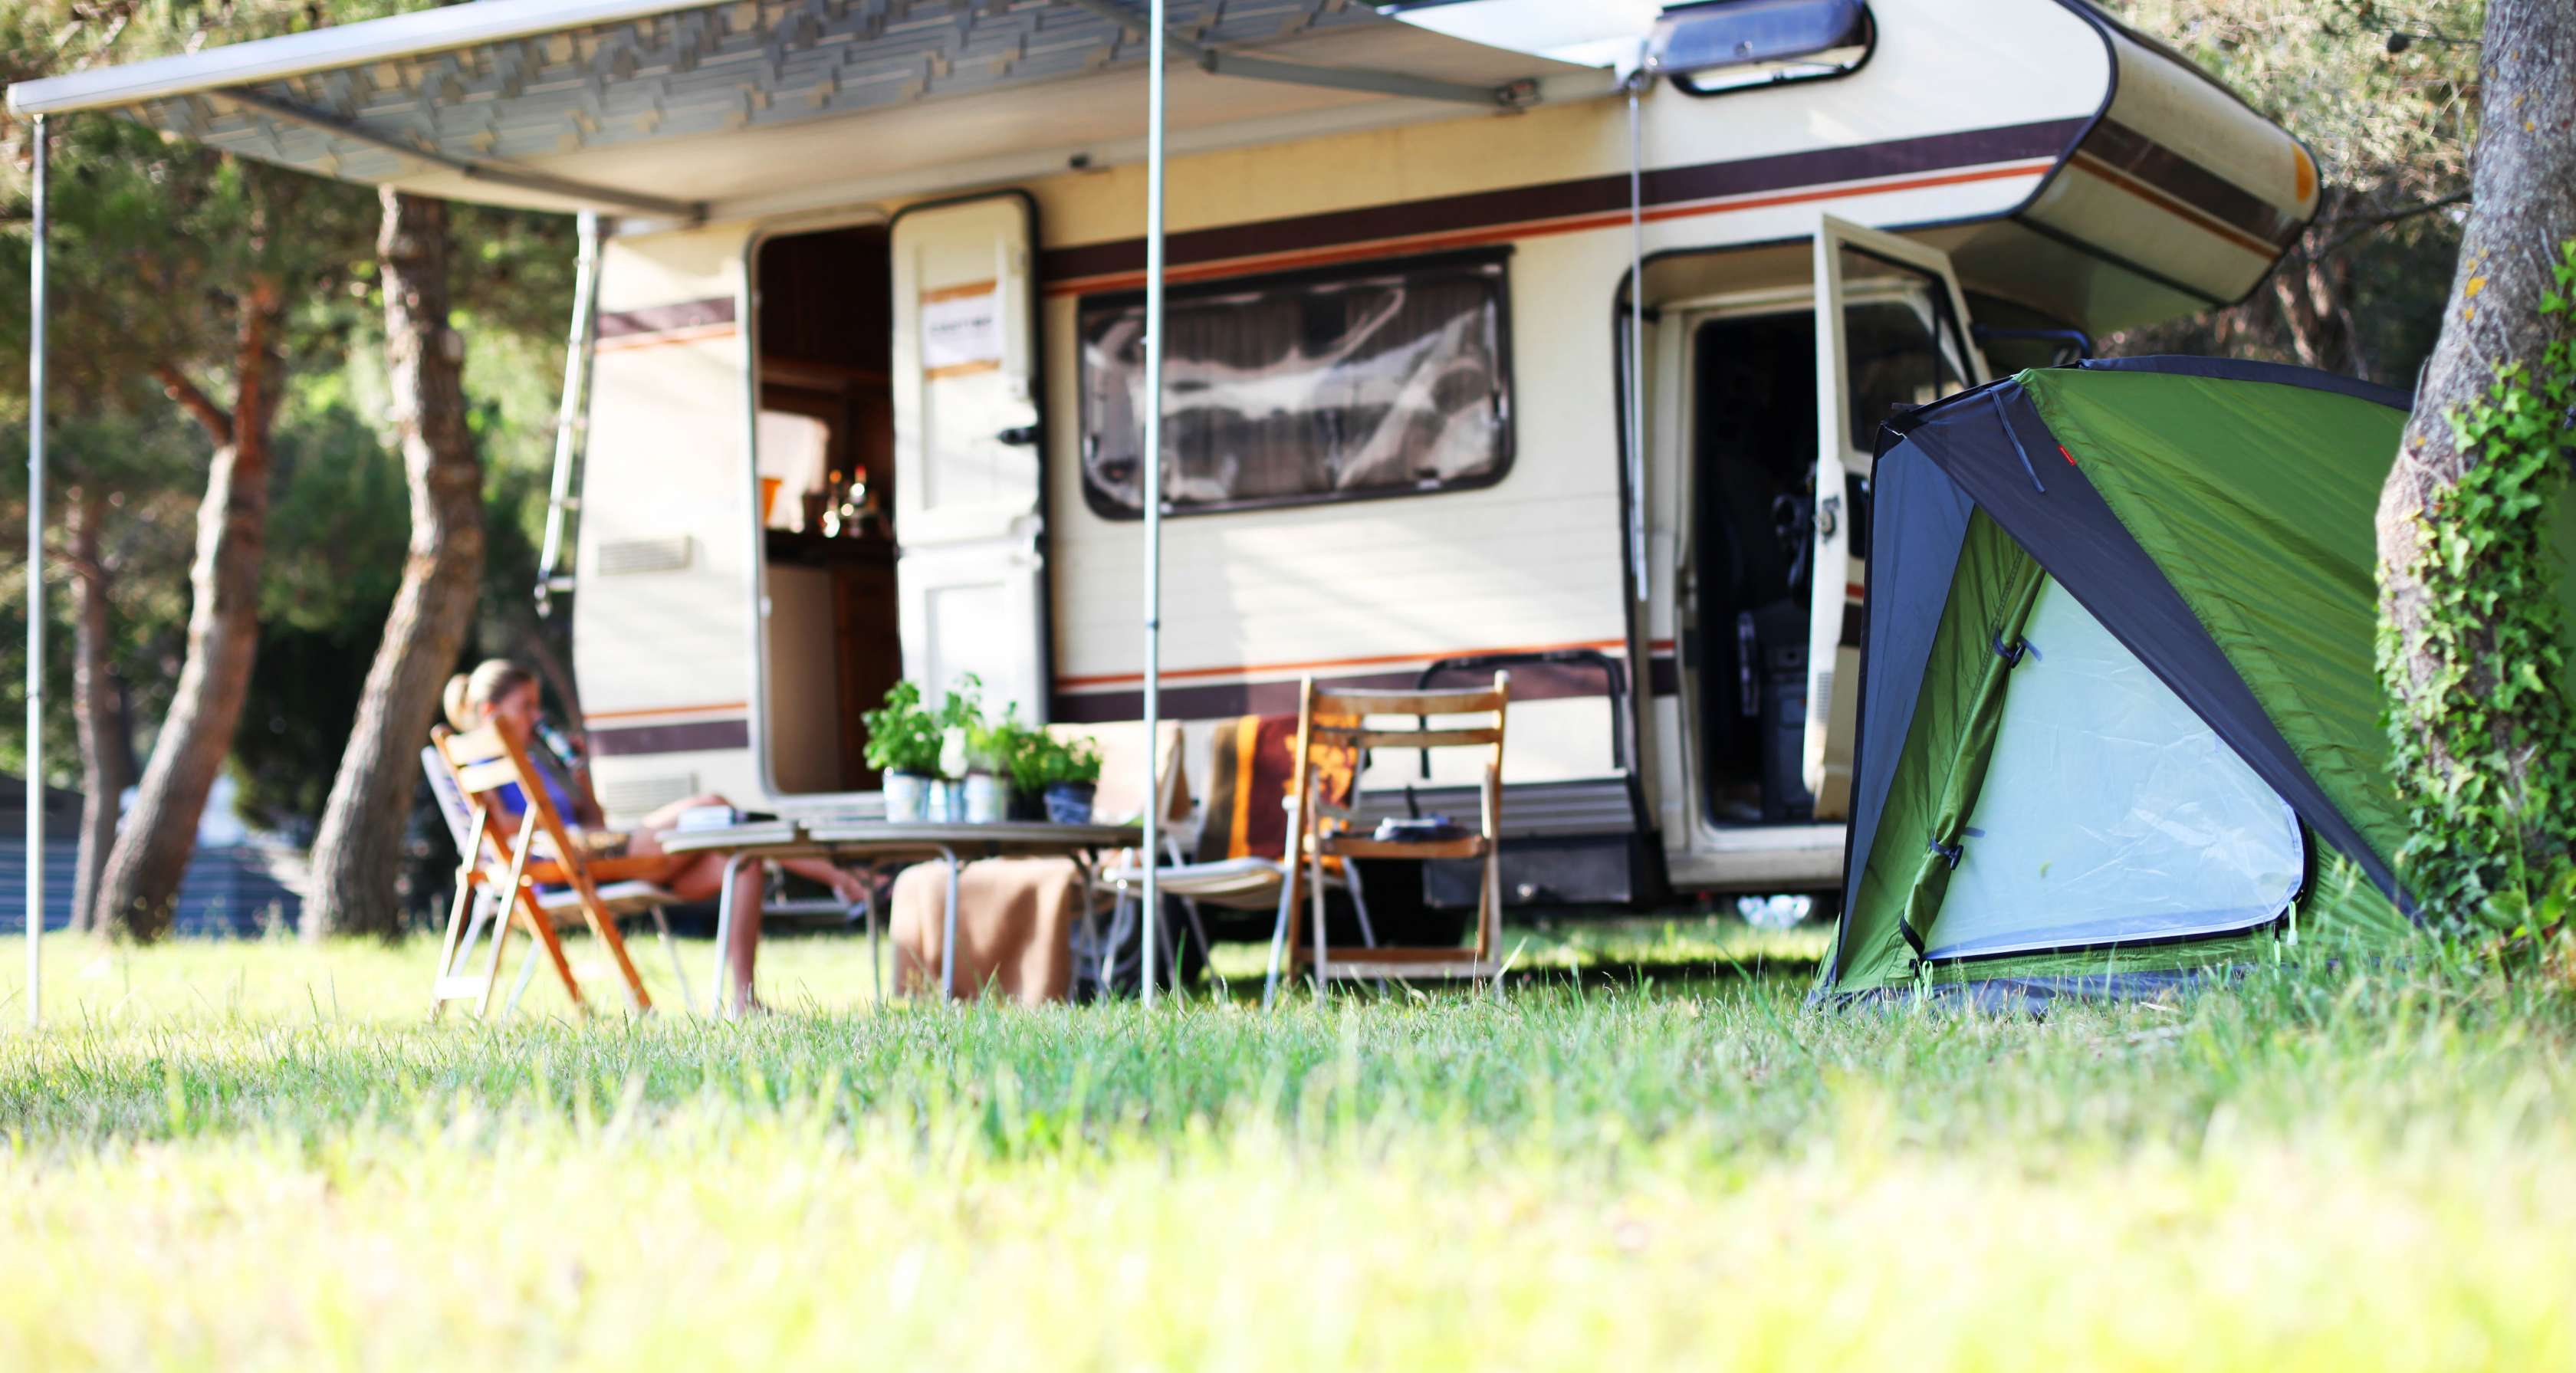 Wohnmobil mit Markise, Campingausrüstung und Zelt steht im Grünen